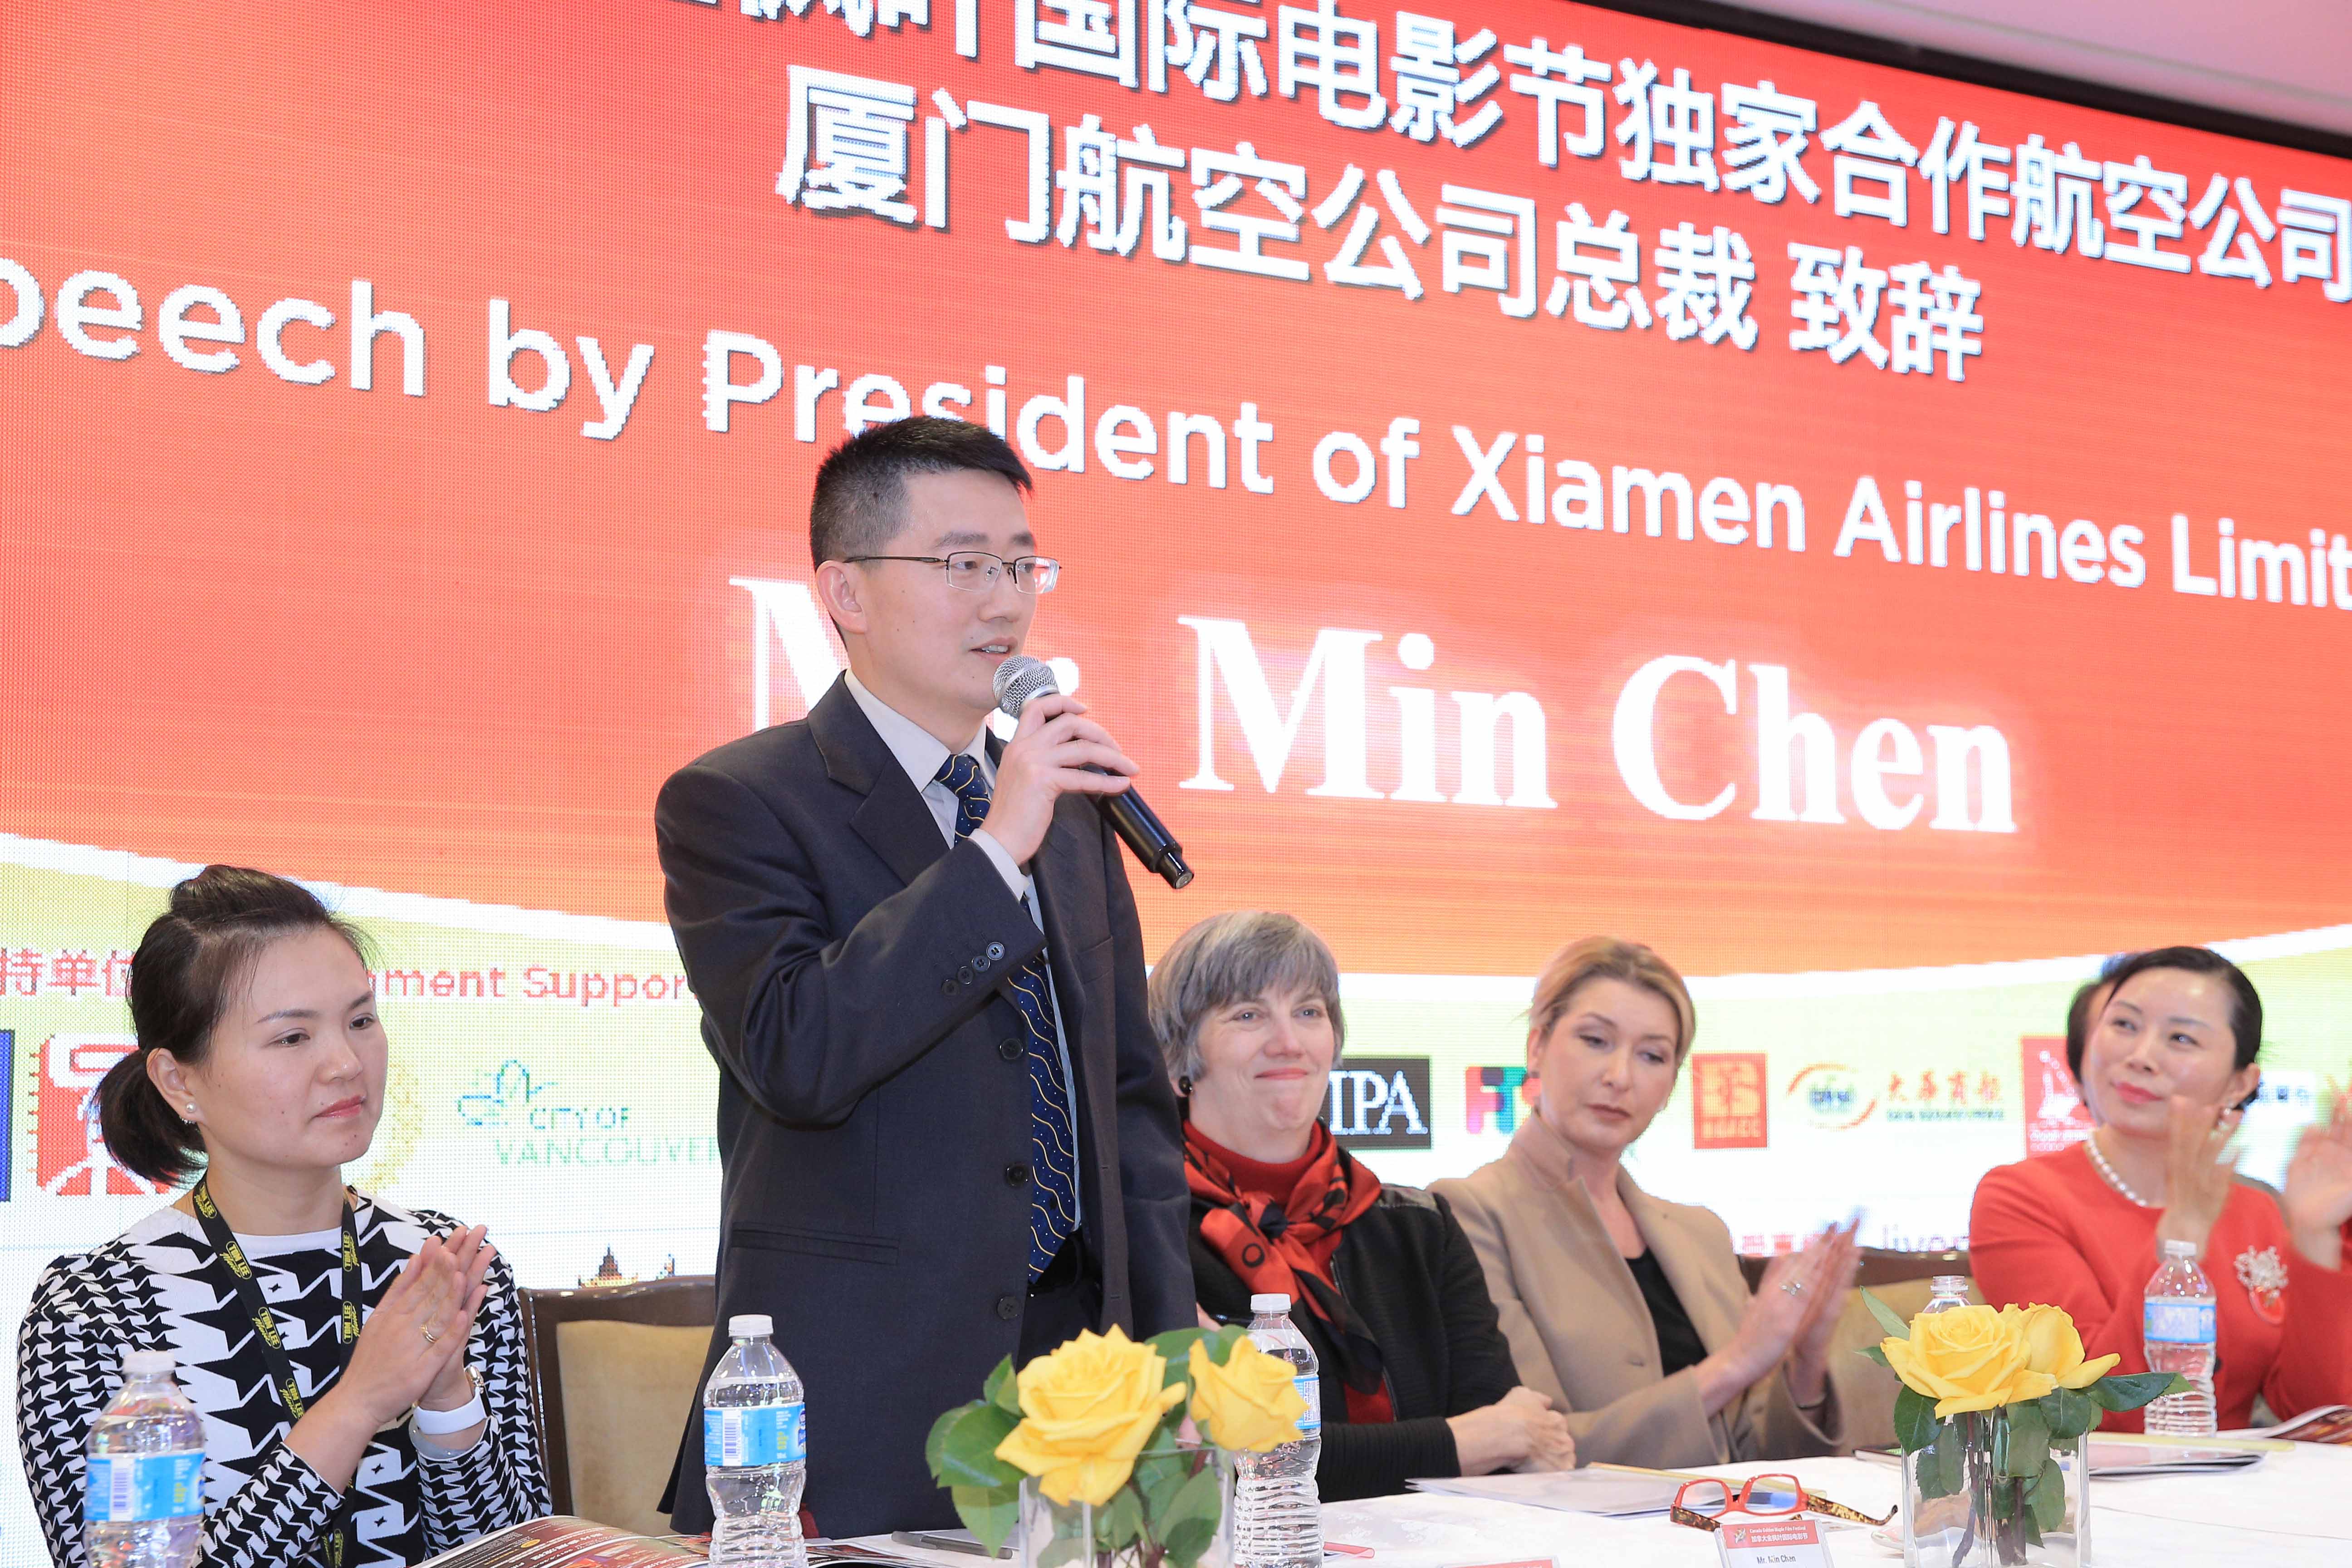 Mr. Min Chen, the President of Xiamen Airline